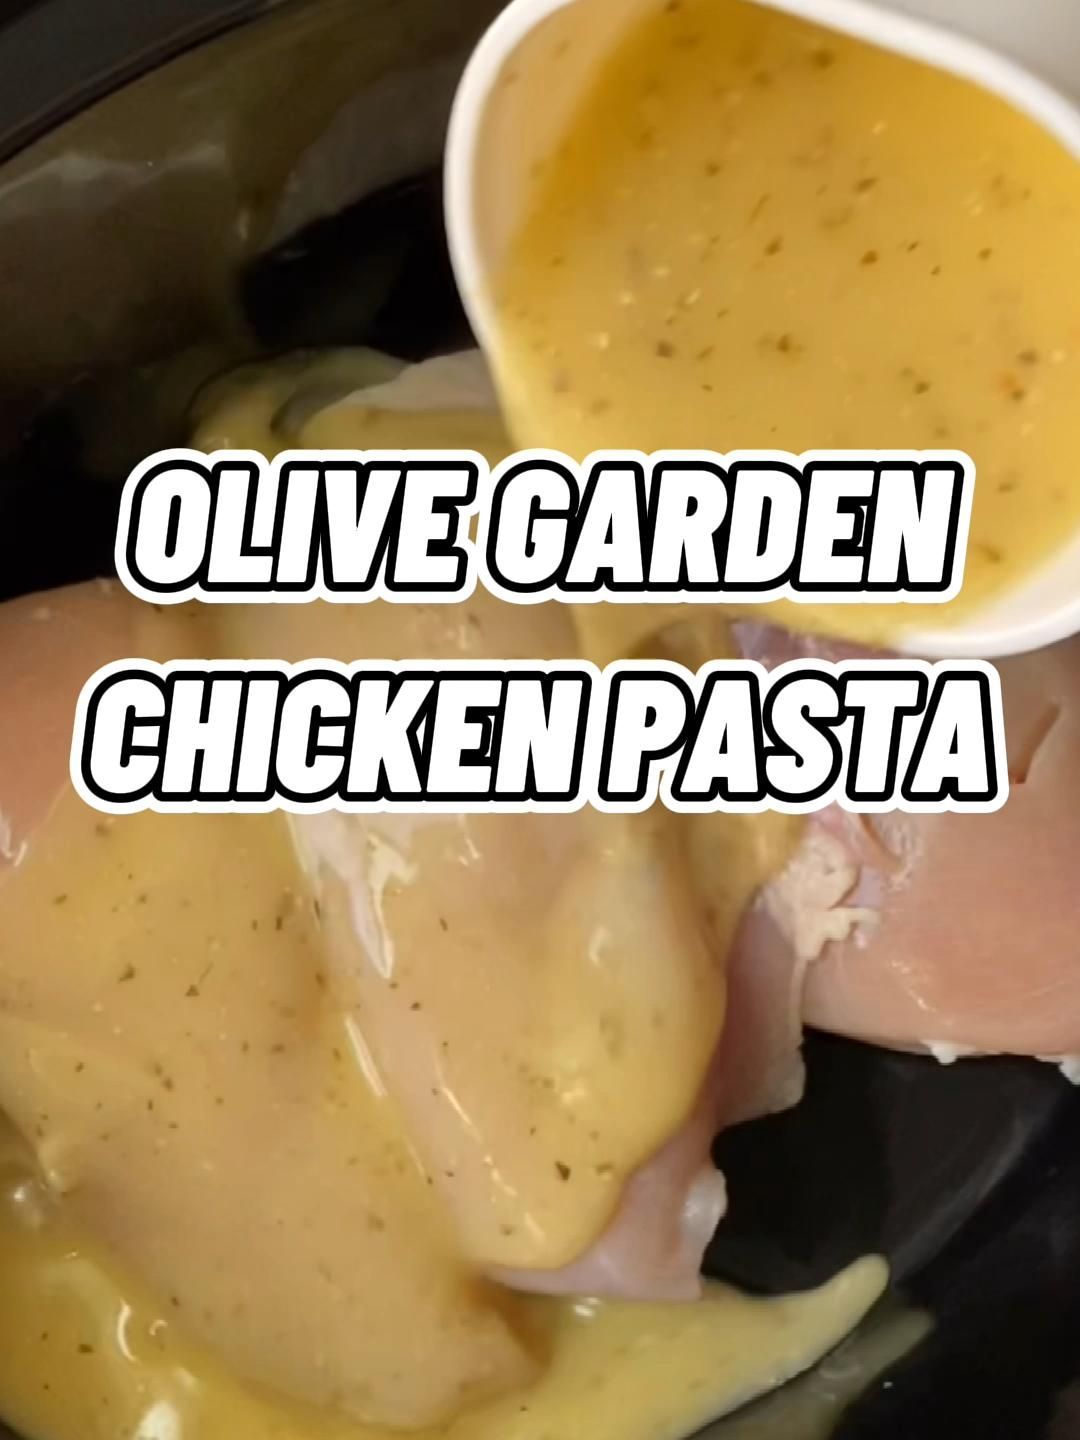 19 dinner recipes chicken pasta ideas